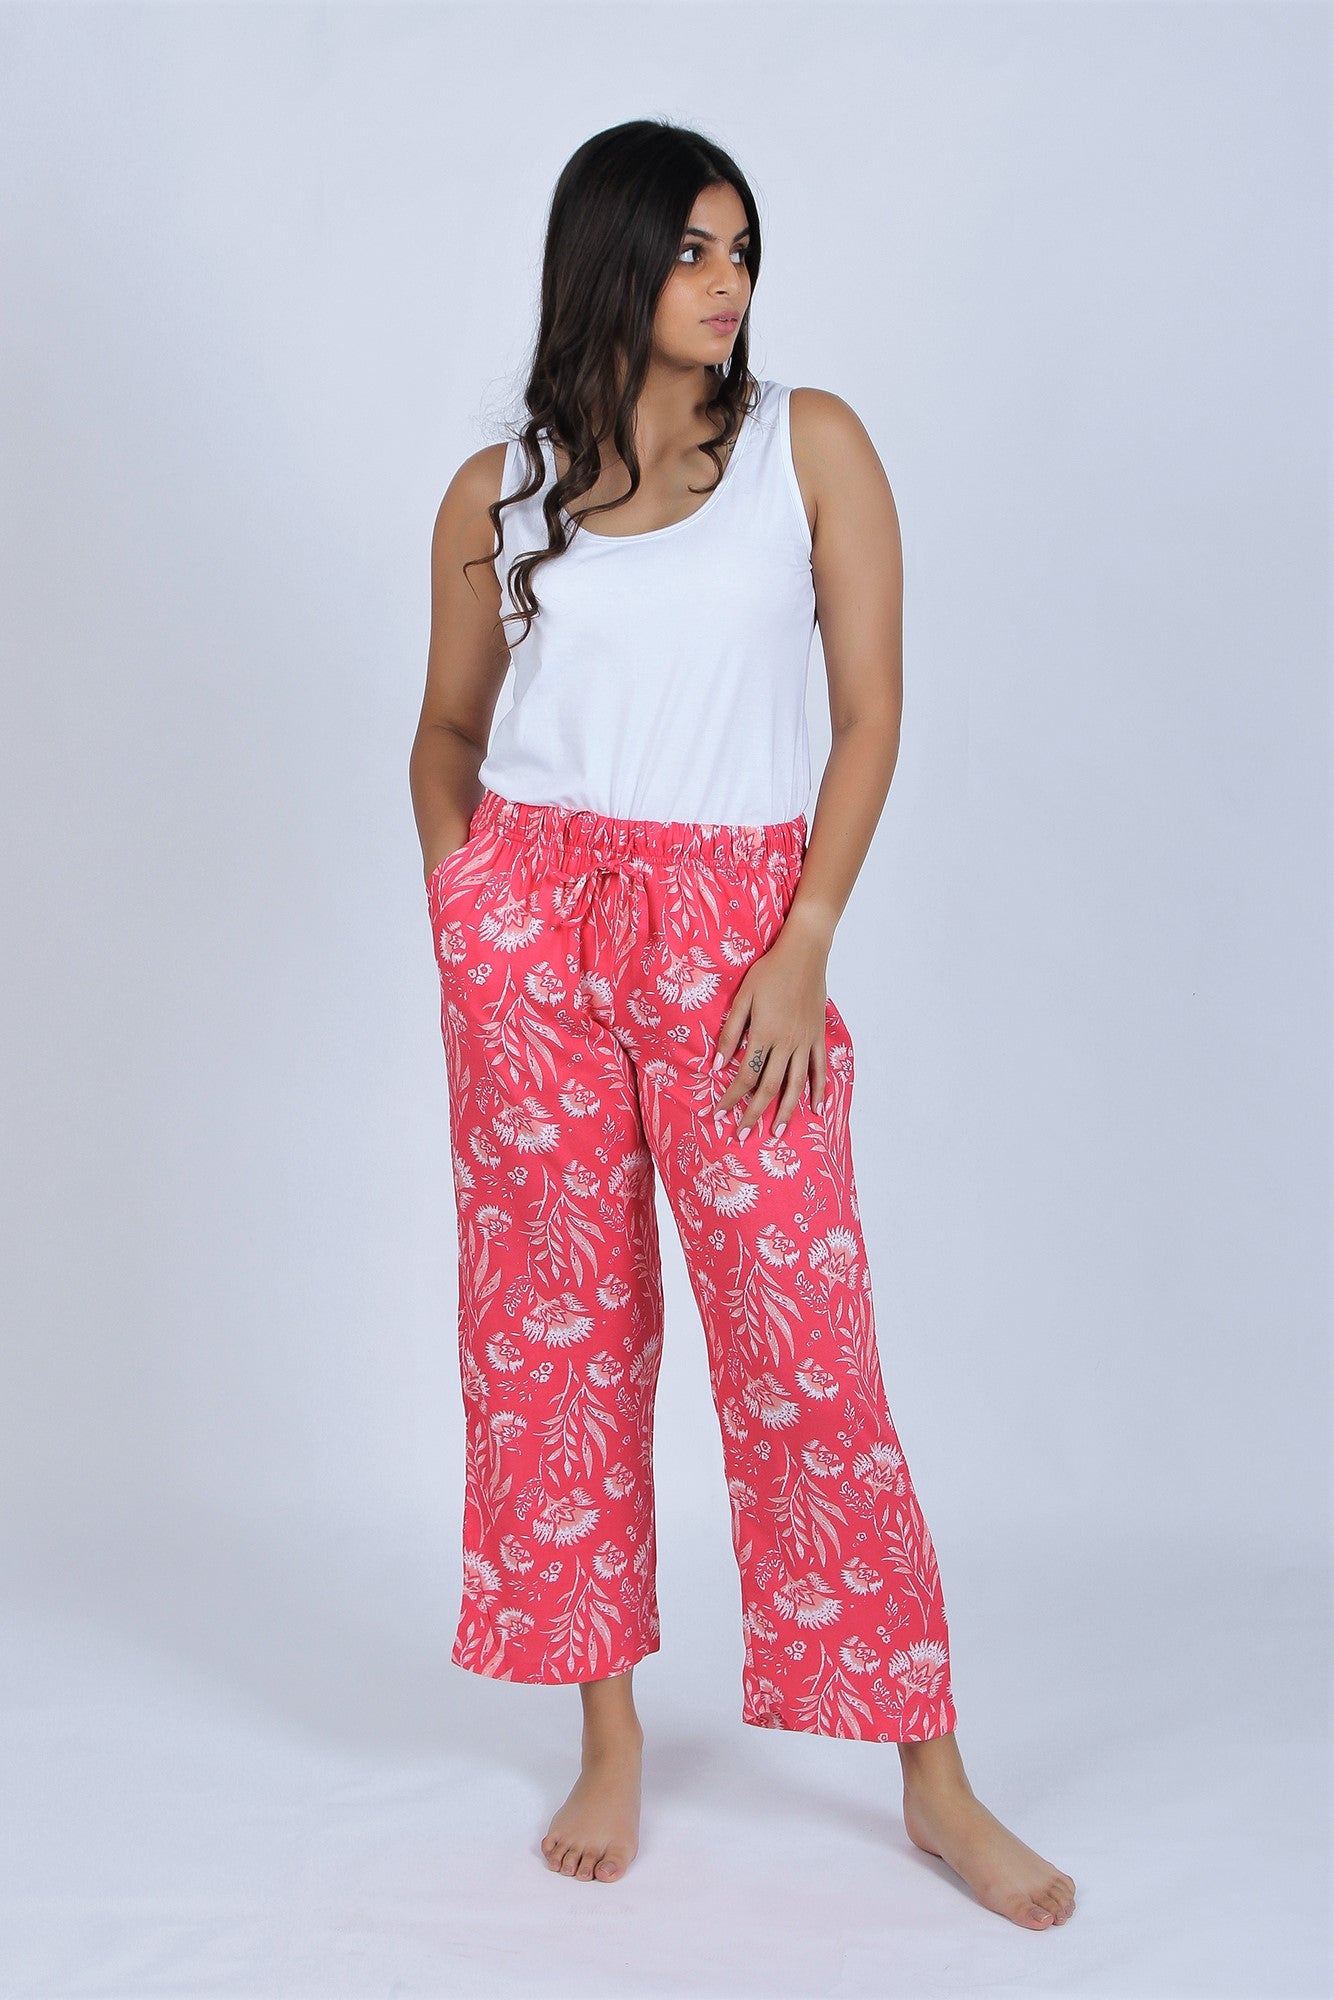 Femofit Pajama Pants for Women Lounge Pants India | Ubuy